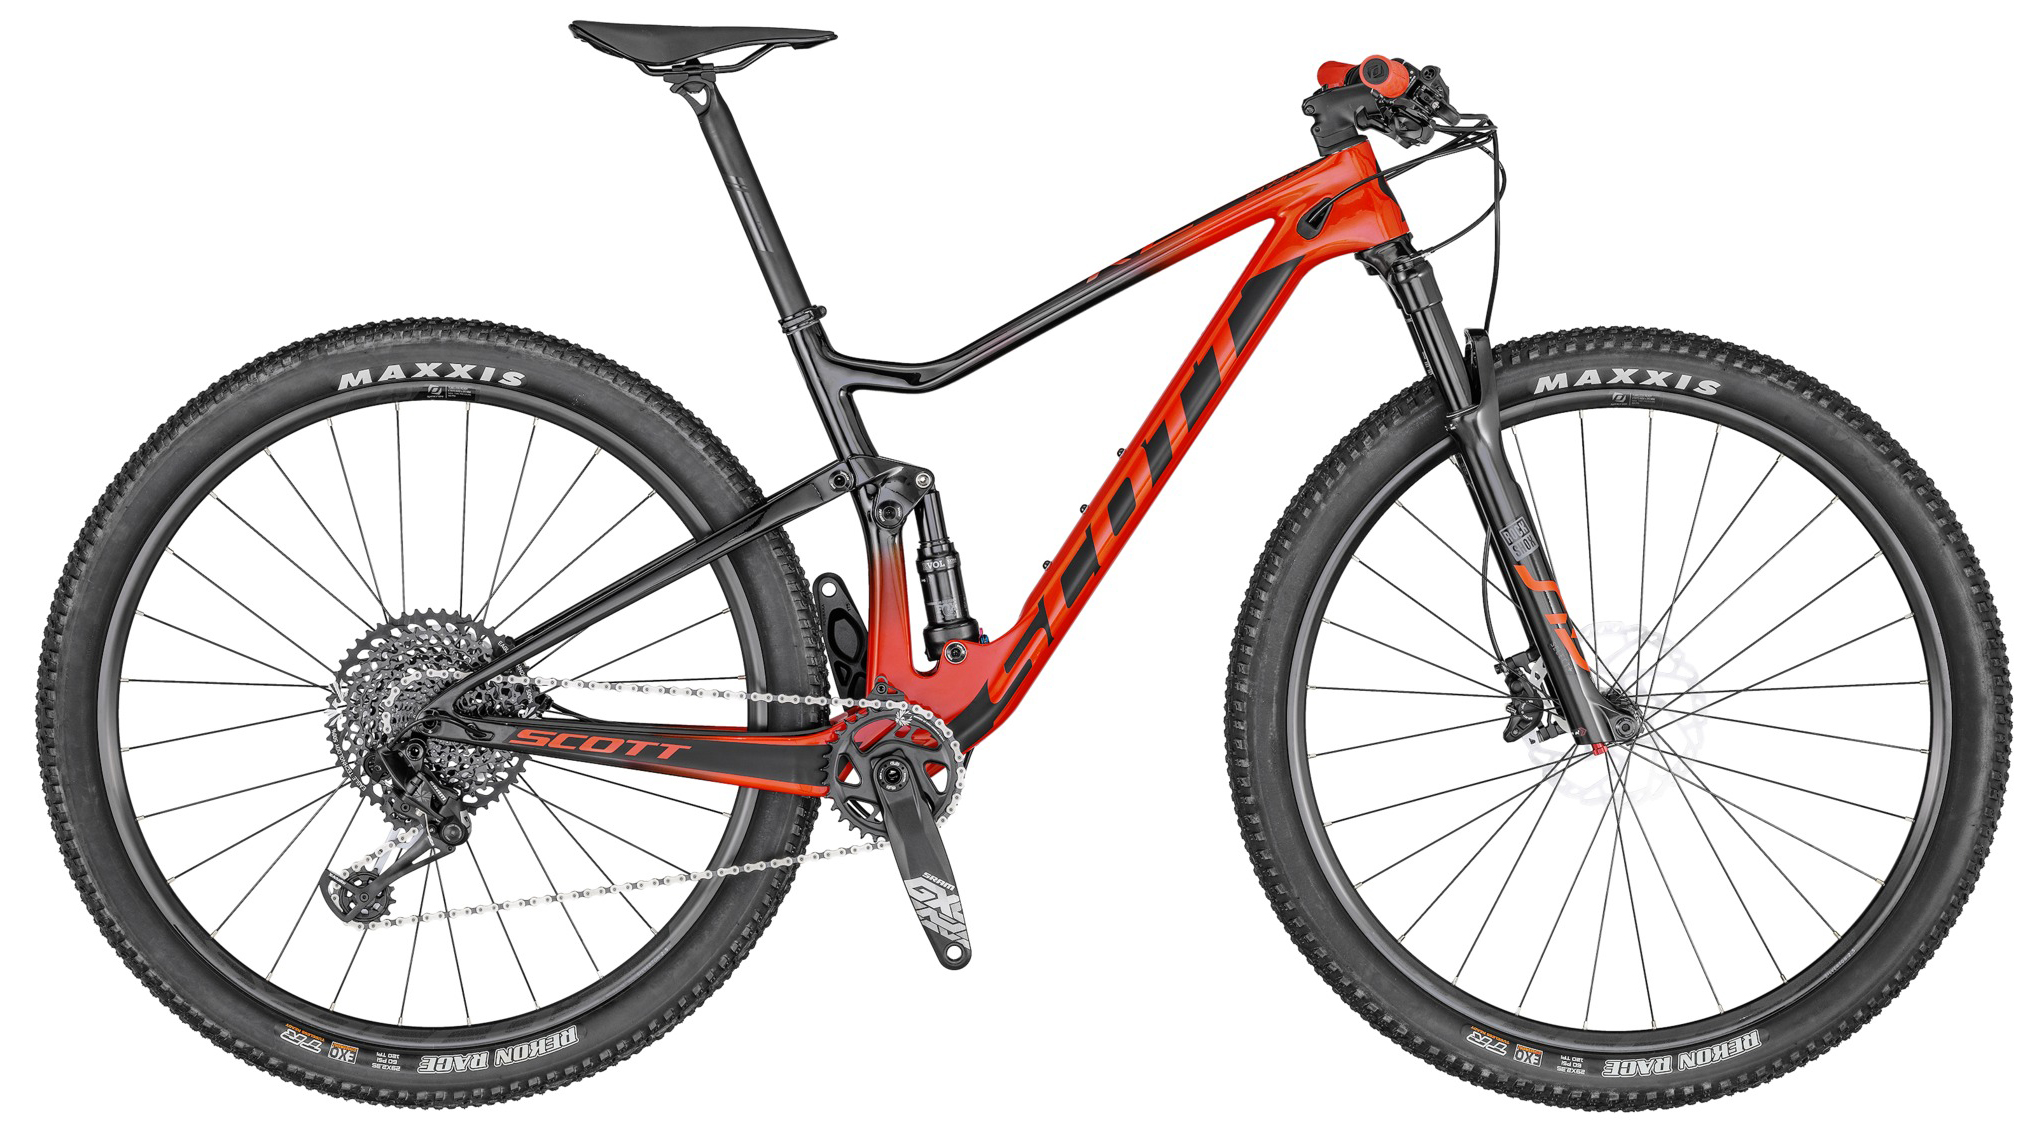  Отзывы о Двухподвесном велосипеде Scott Spark RC 900 Team Red 2020